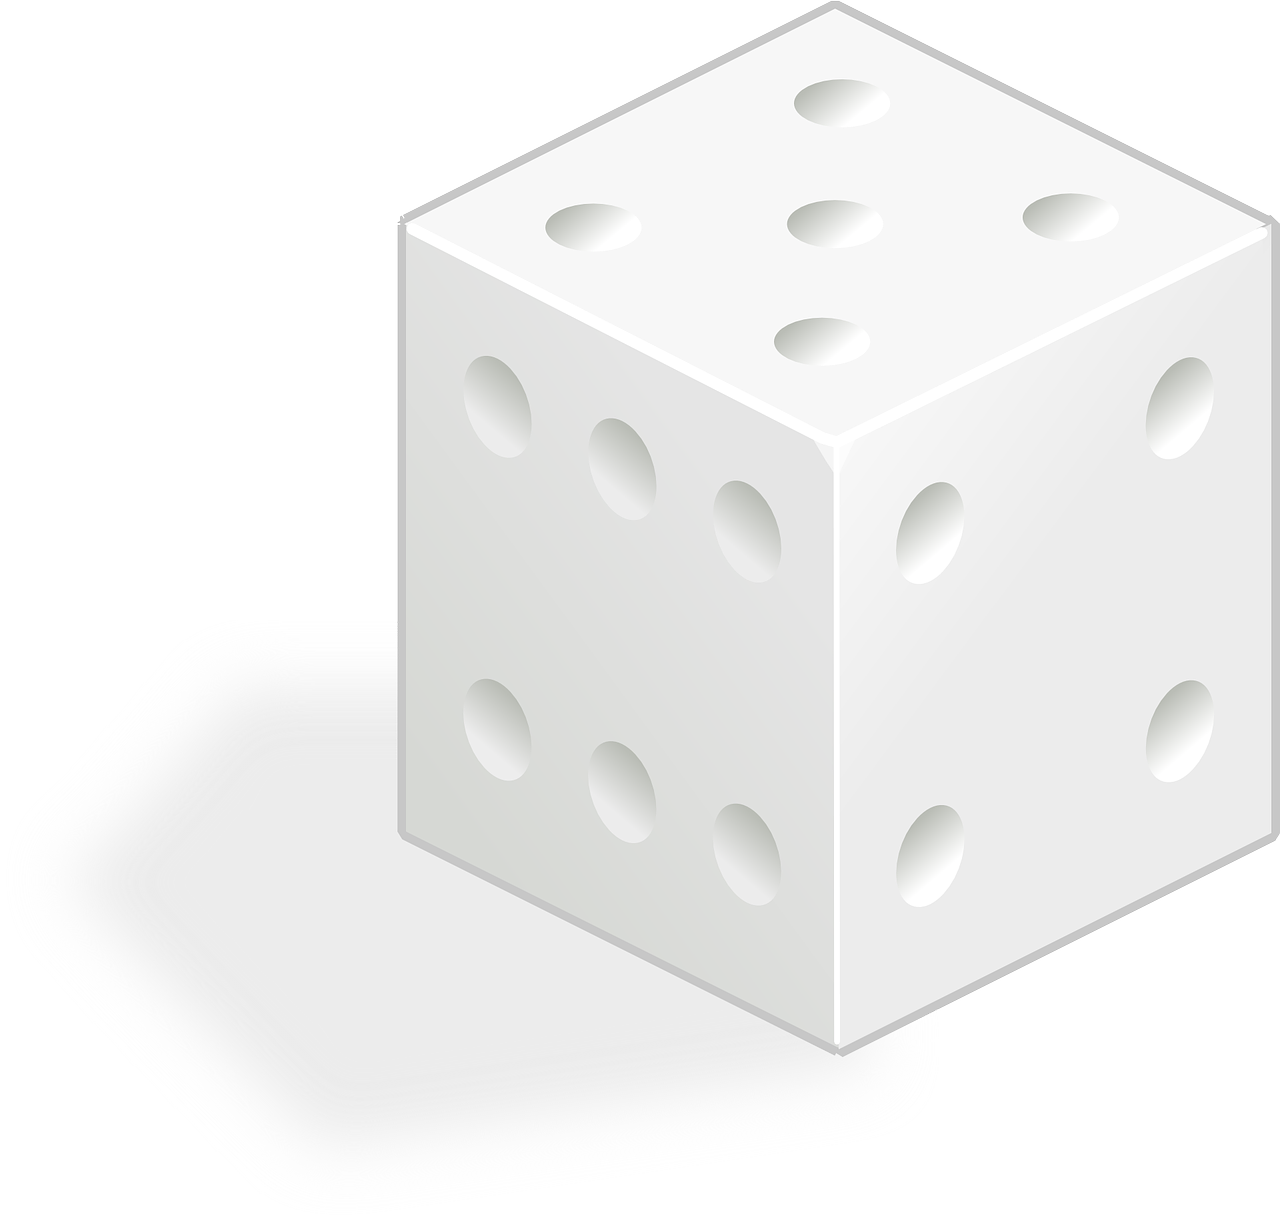 die dice game free photo